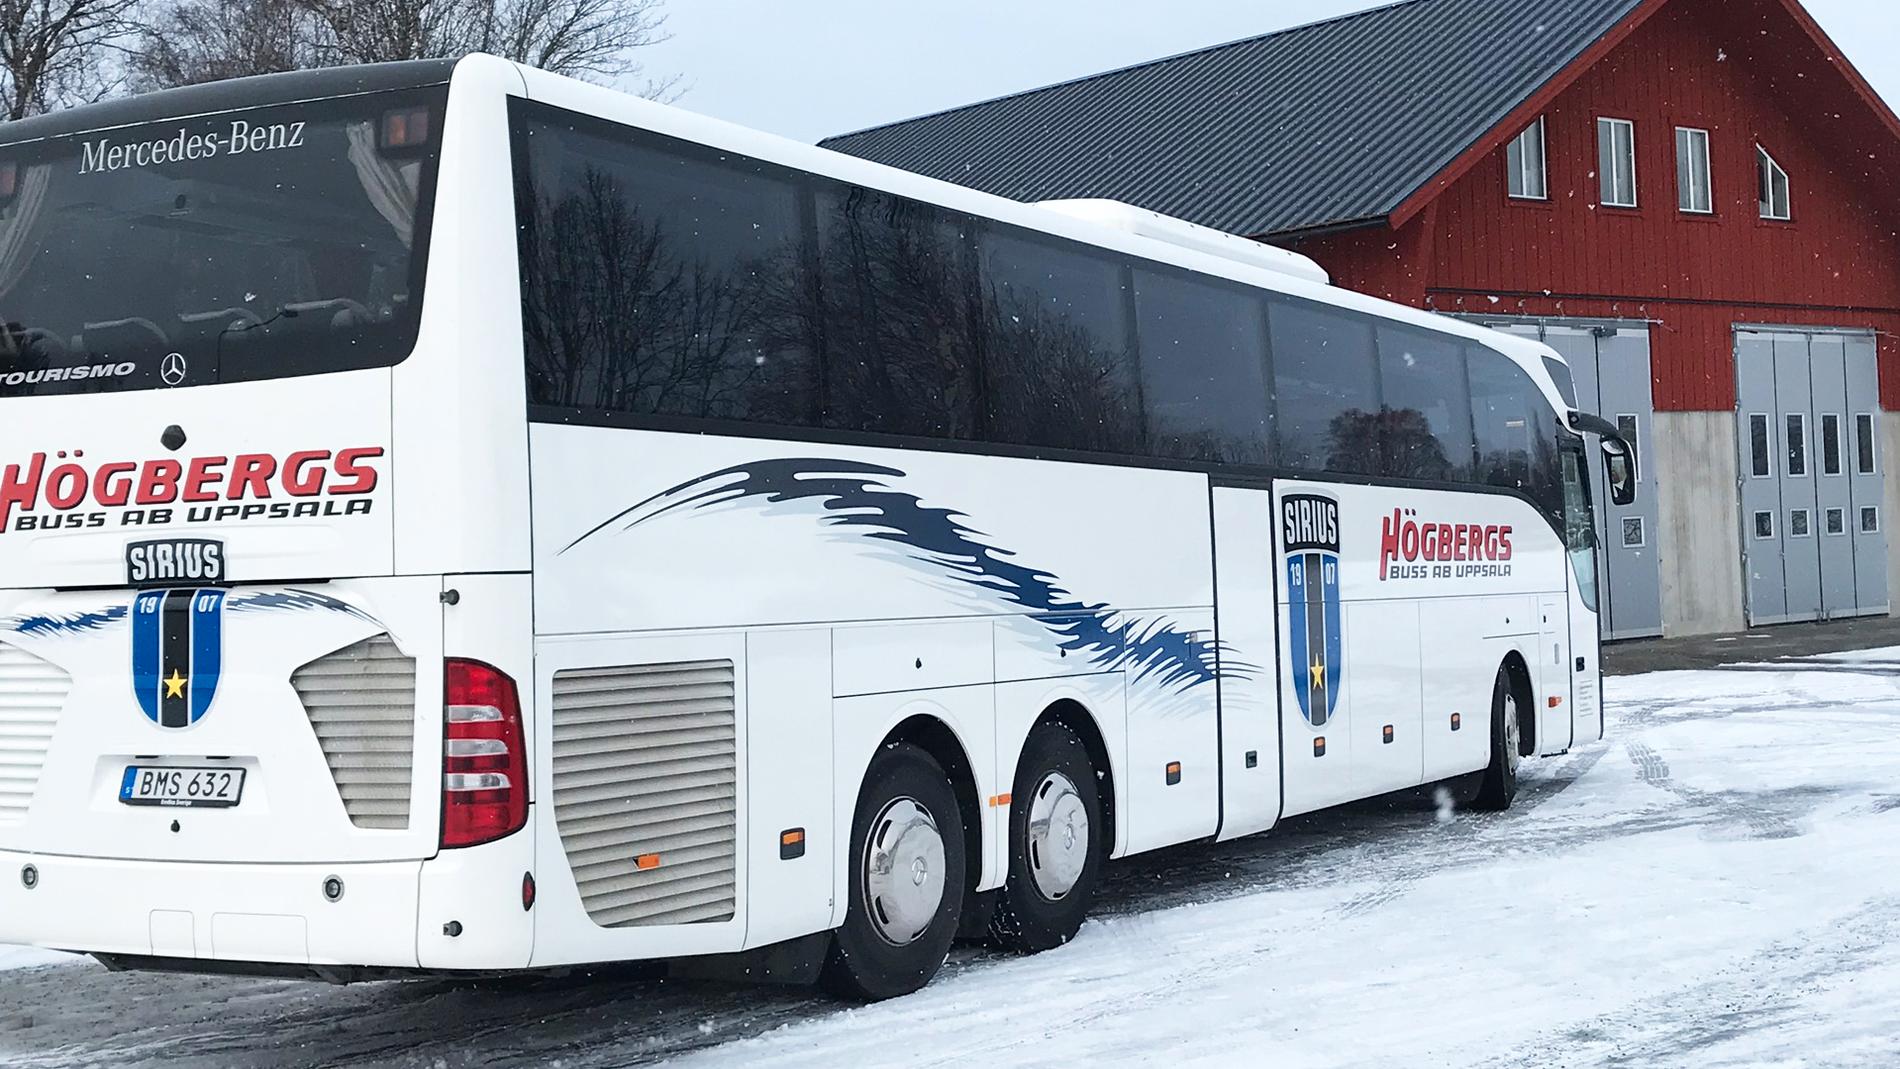 Sirius spelarbuss som laget reser med under den allsvenska säsongen.